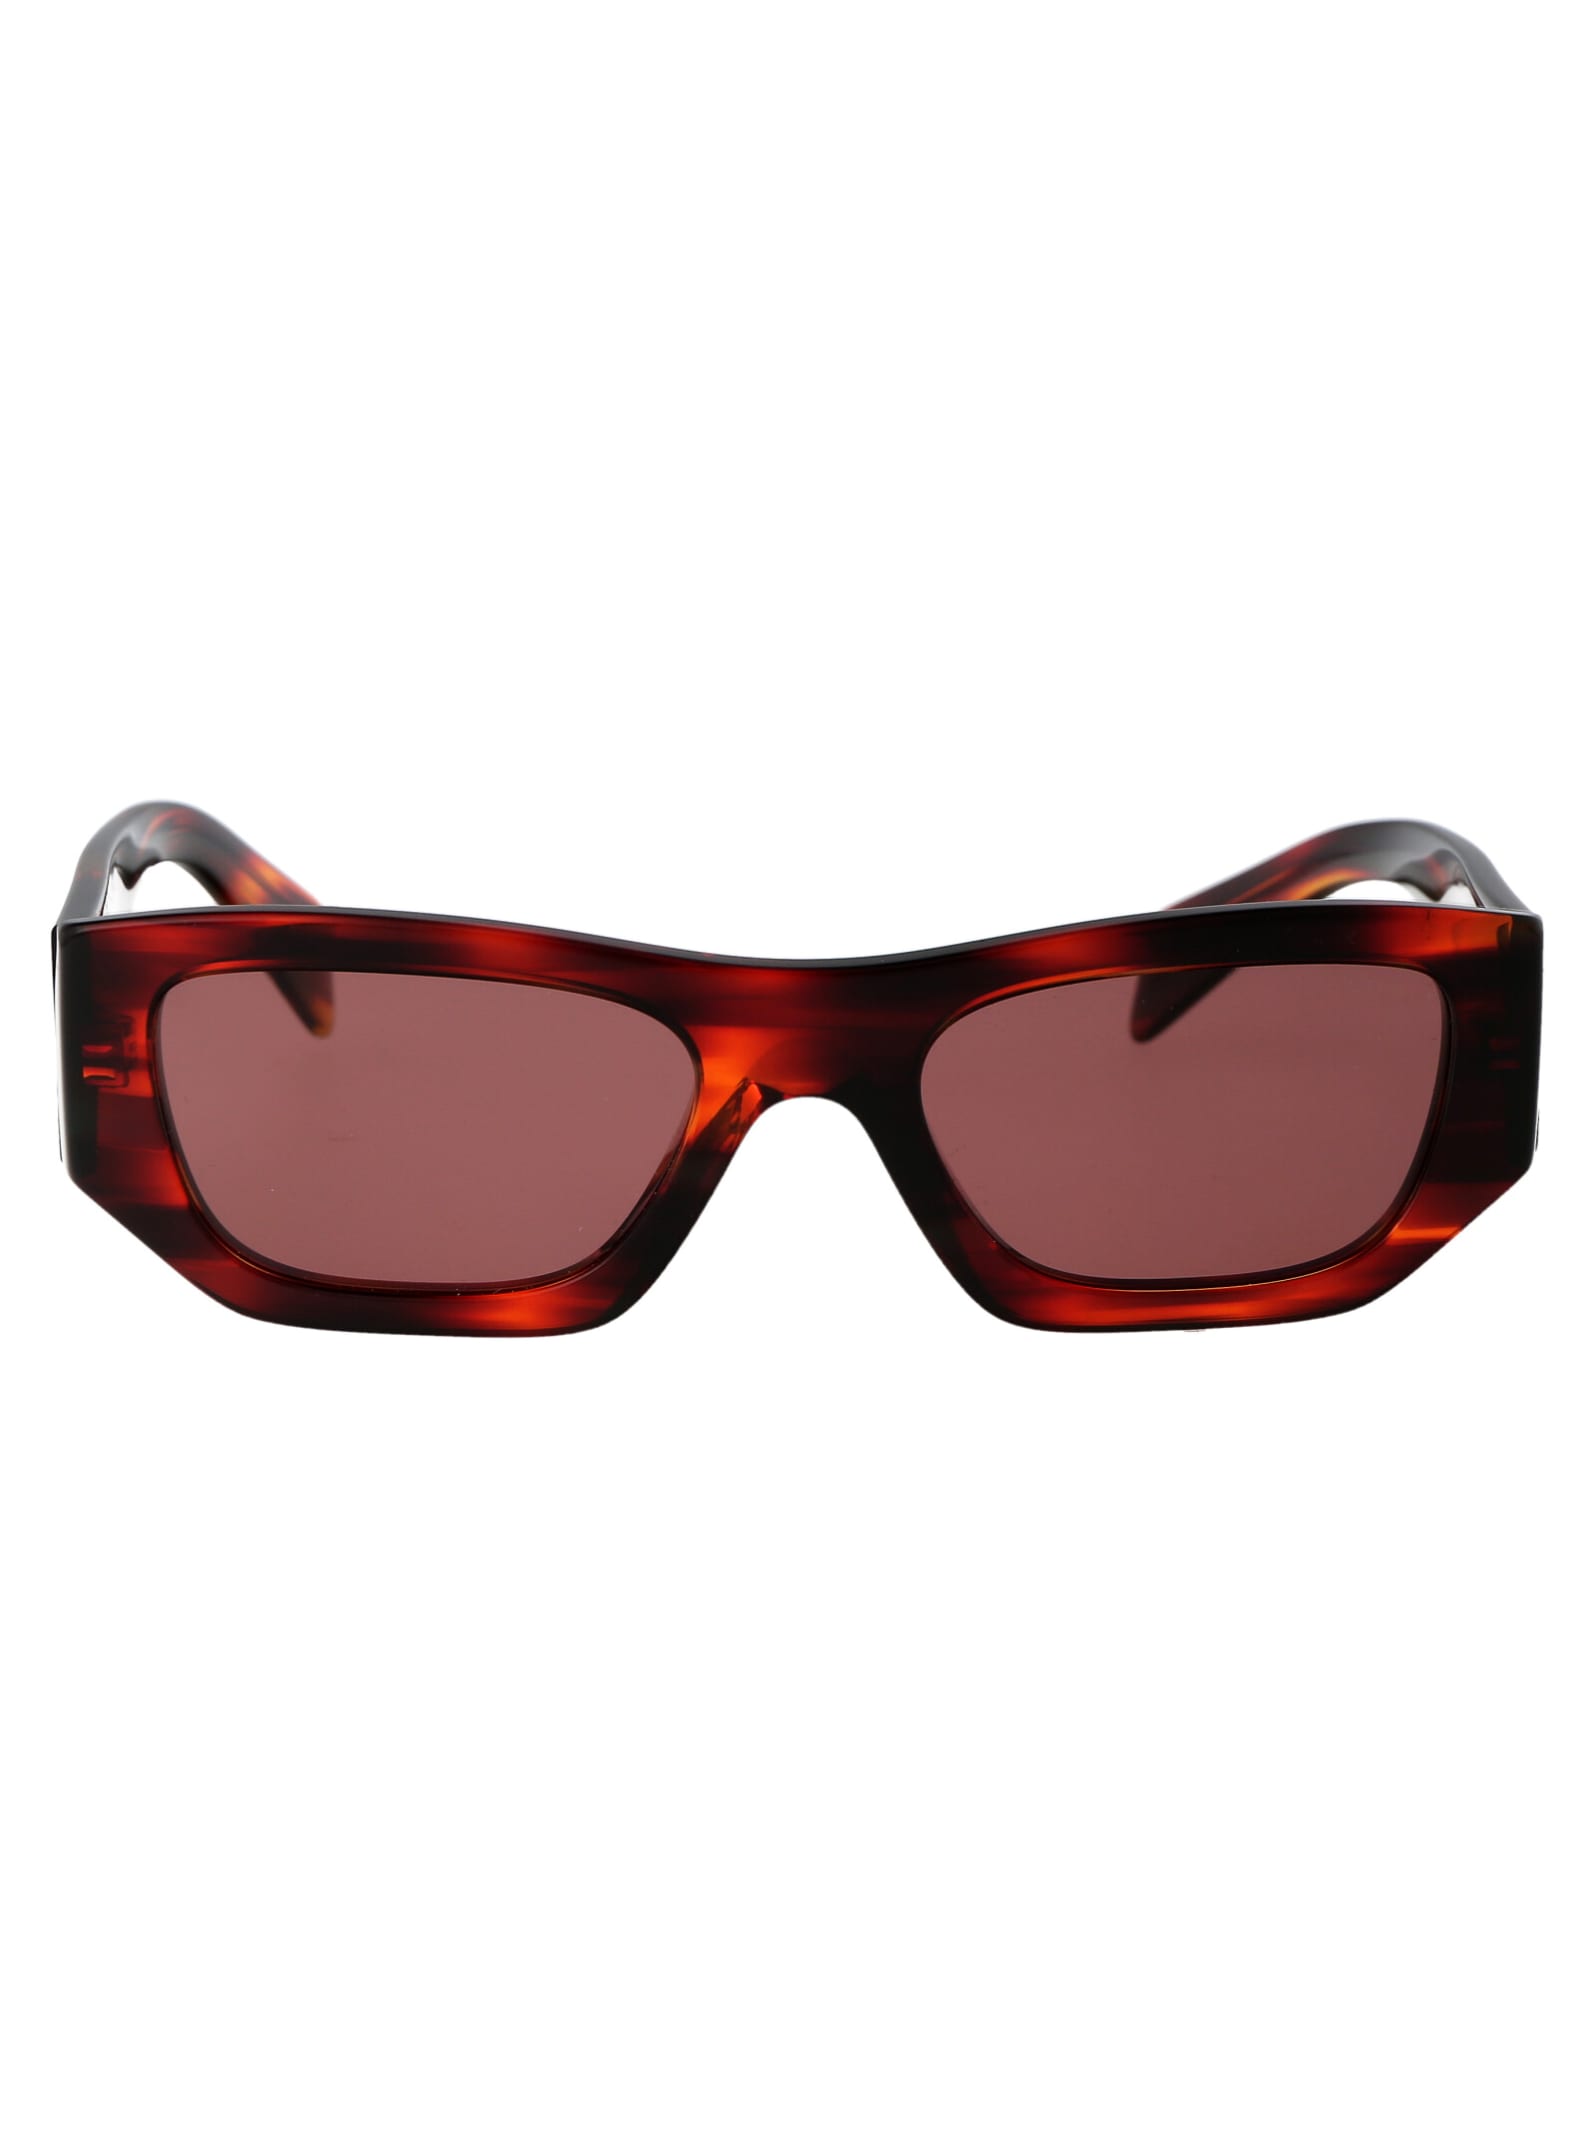 Prada 0pr A01s Sunglasses In 13o80b Havana Red